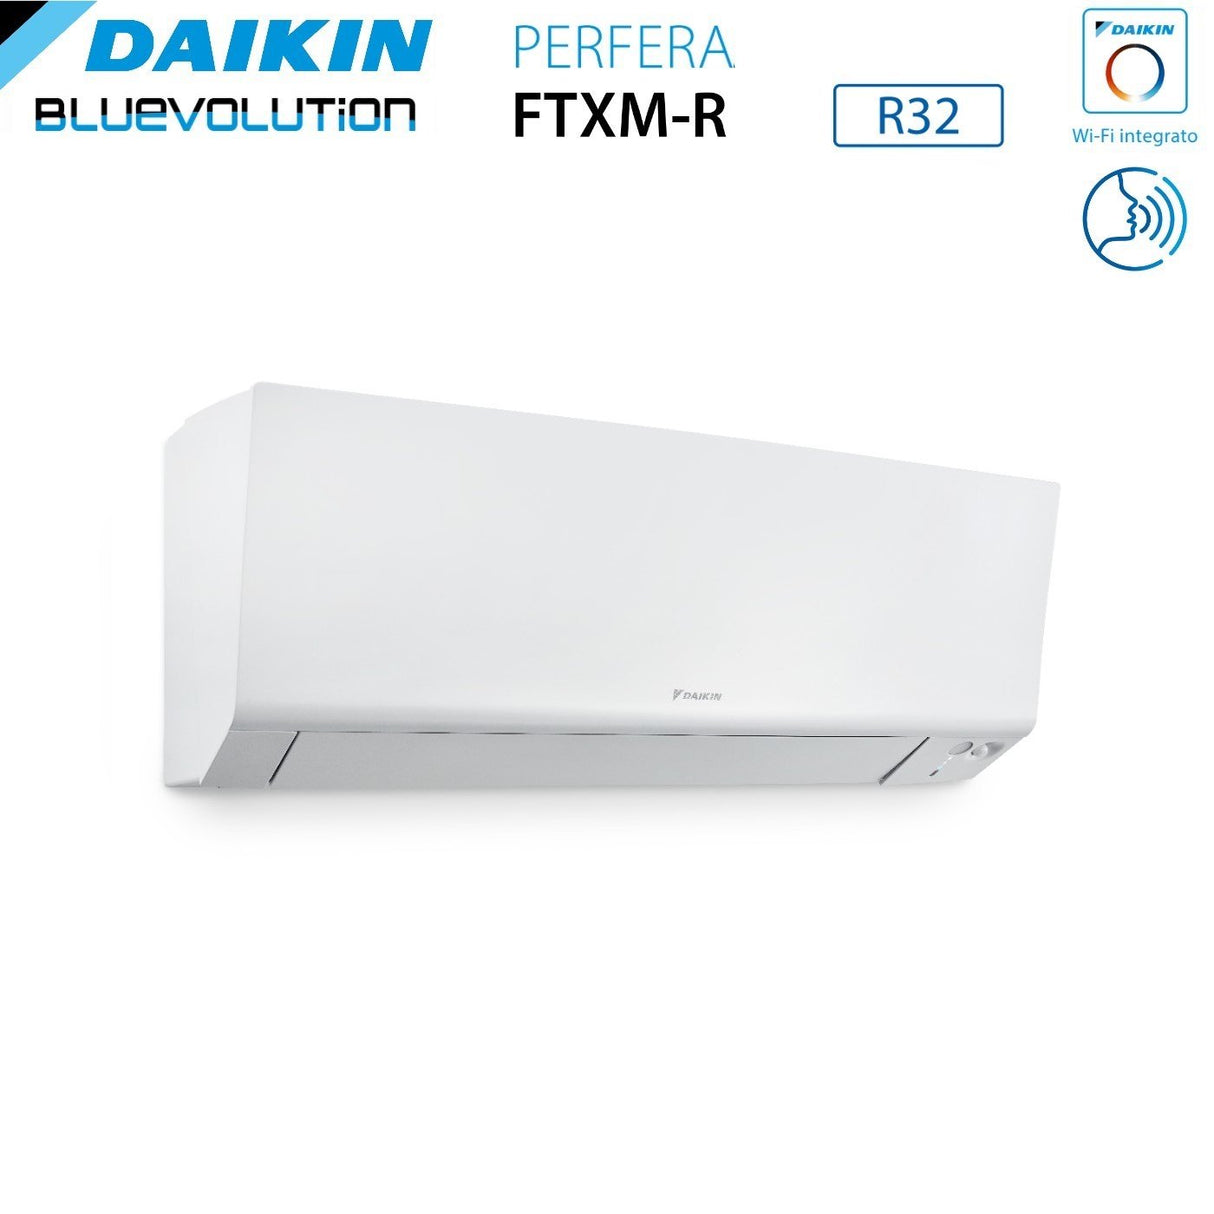 immagine-4-daikin-climatizzatore-condizionatore-daikin-bluevolution-quadri-split-inverter-serie-ftxmr-perfera-wall-9999-con-4mxm80a-r-32-wi-fi-integrato-9000900090009000-garanzia-italiana